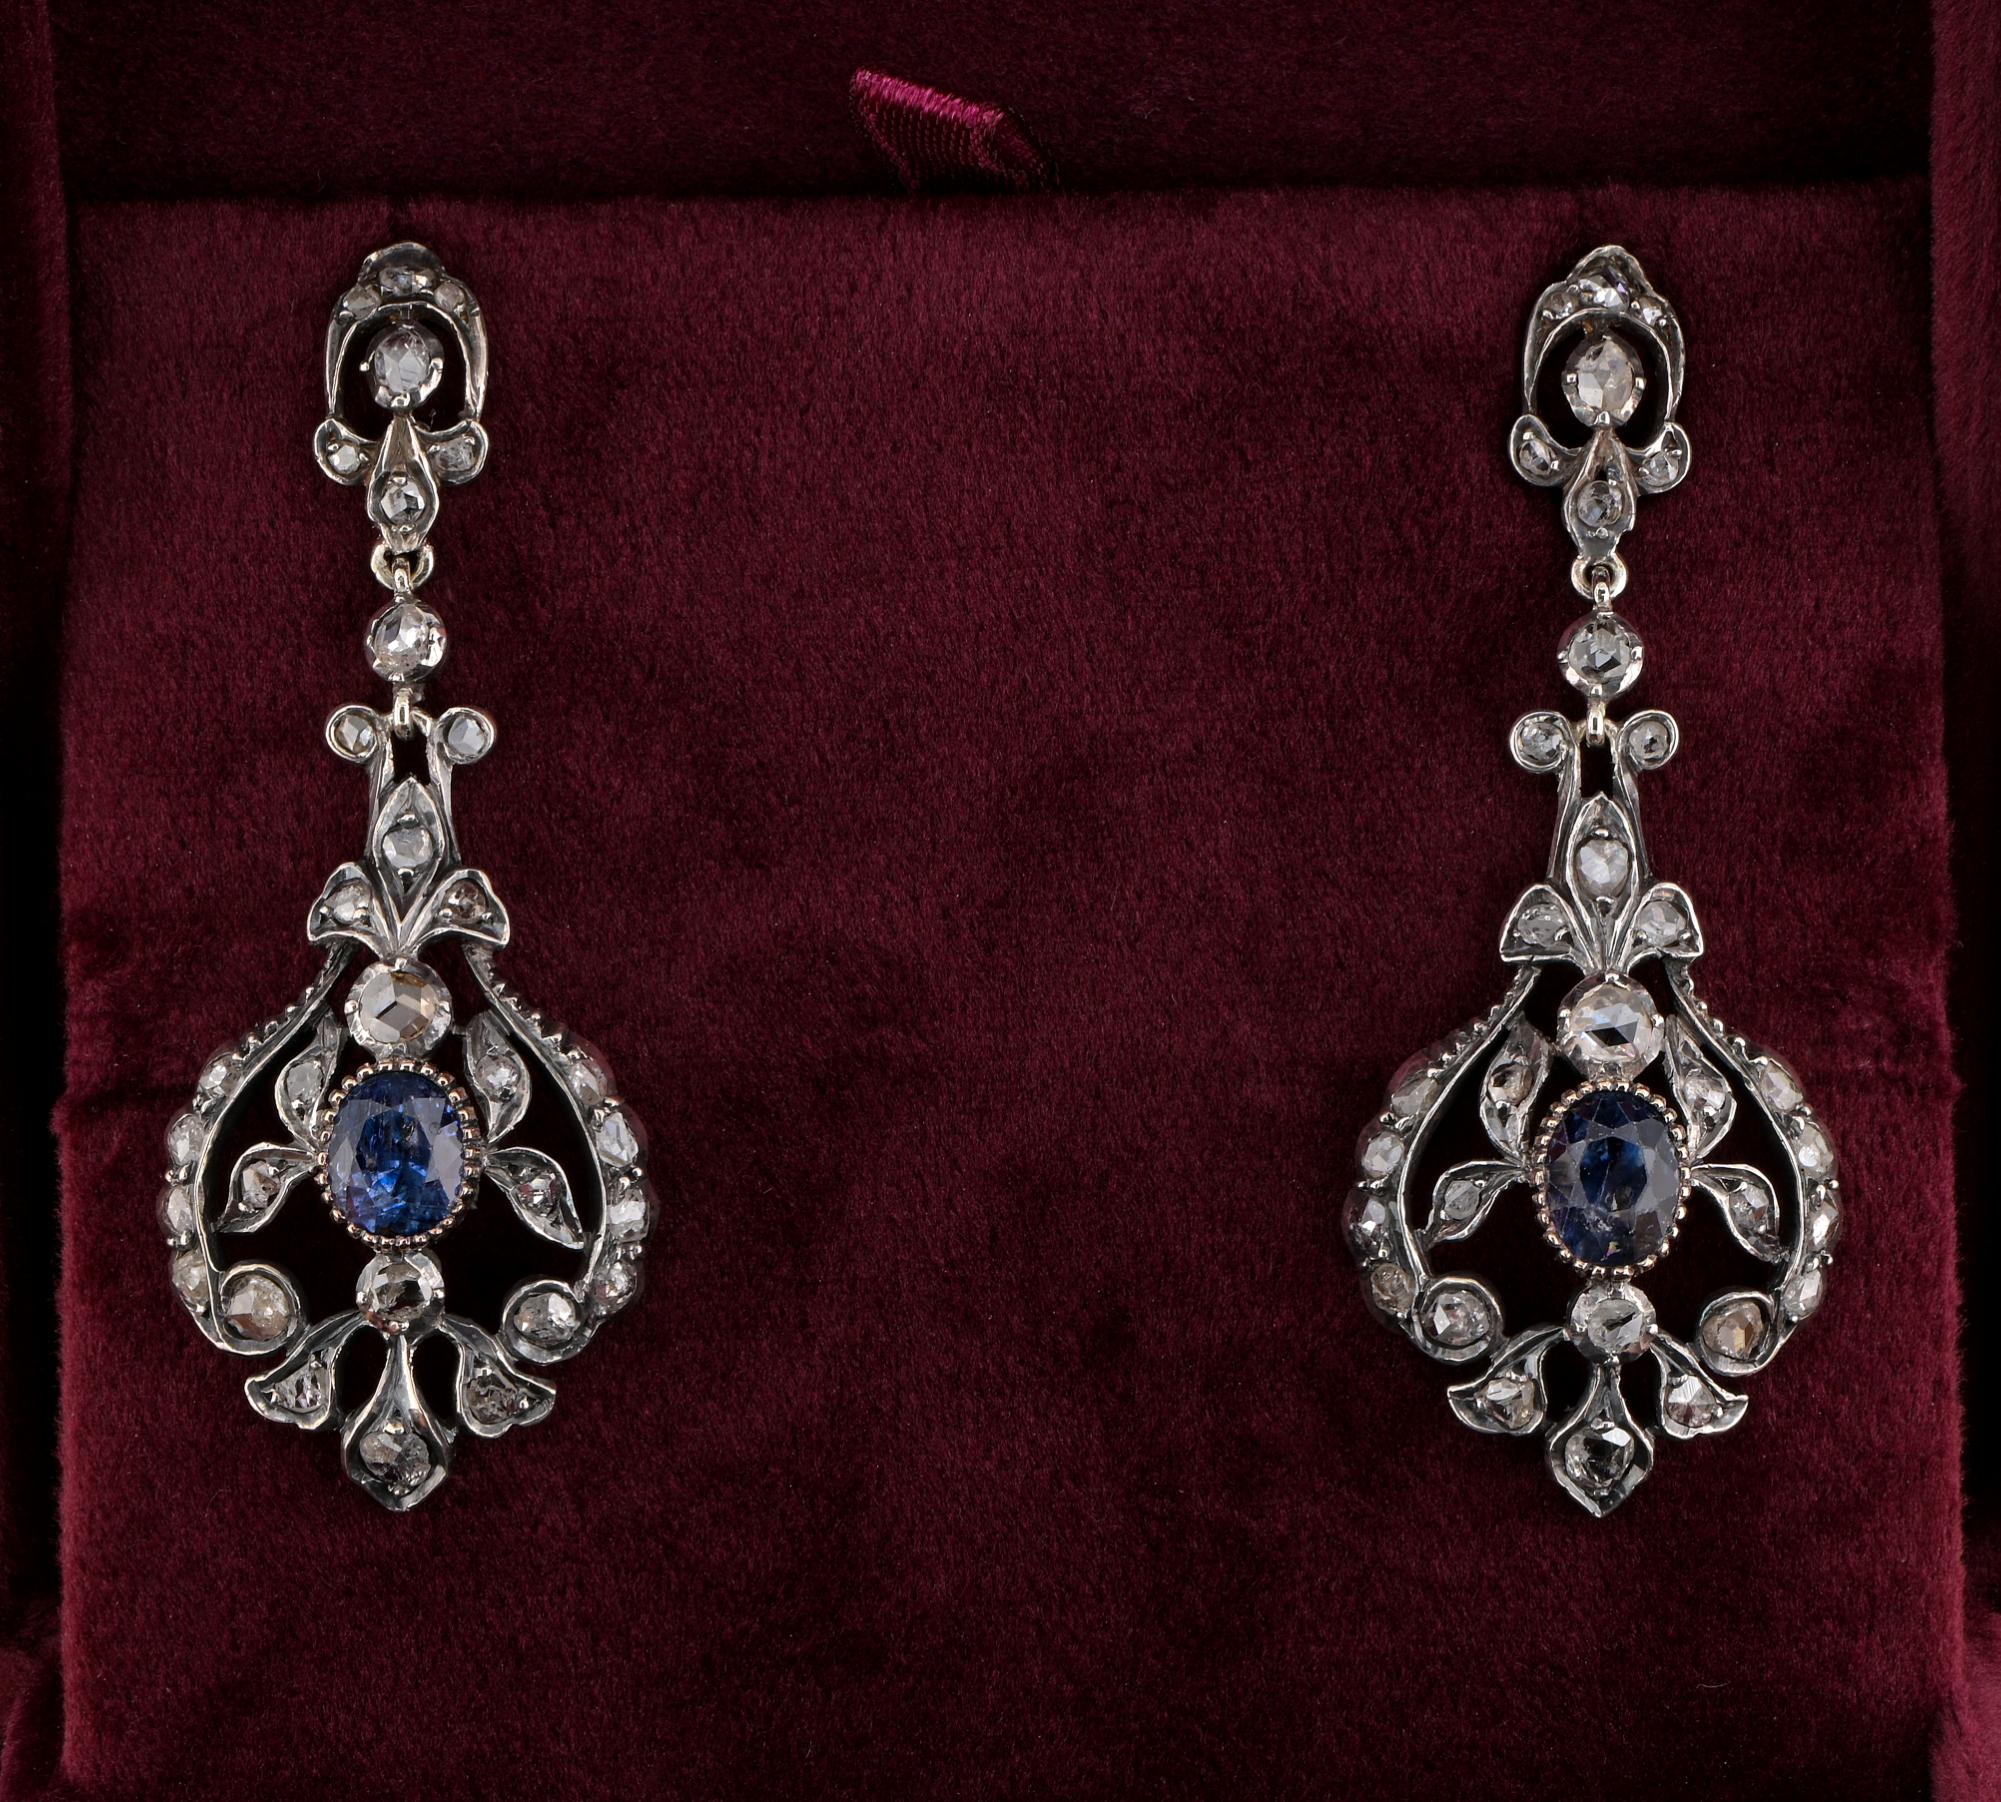 Ces magnifiques boucles d'oreilles anciennes datent de 1890 circa
Fabriqué à la main en argent massif 18 KT surmonté d'une médaille d'argent.
Charmante volute conçue dans un fabuleux style ajouré.
Serti d'une sélection de 70 diamants anciens de